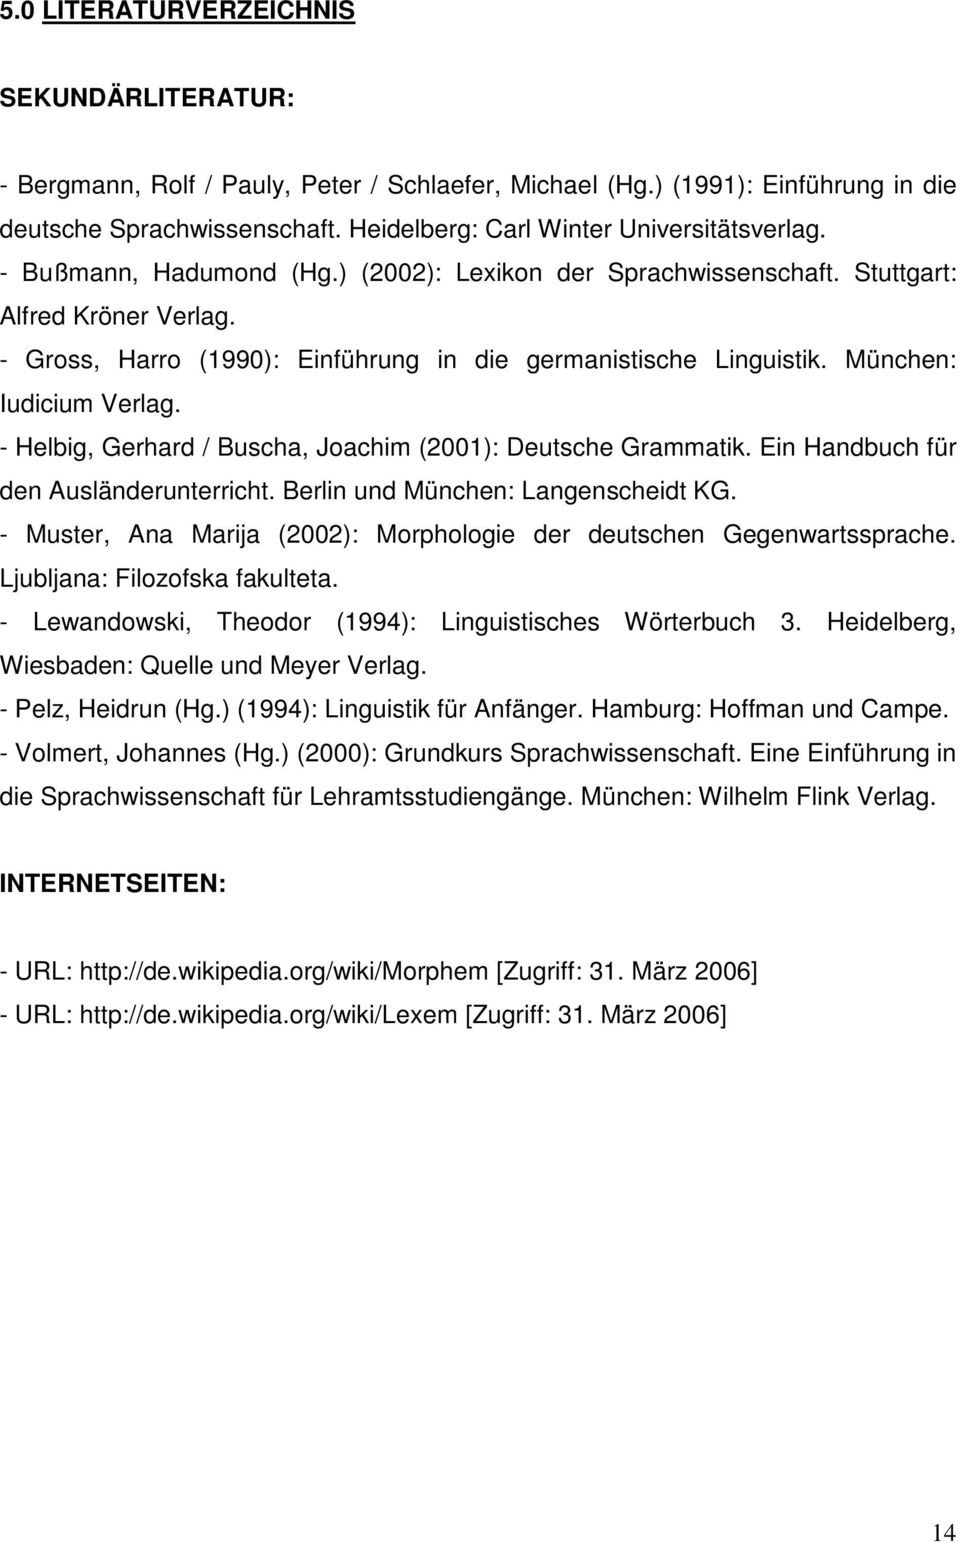 - Gross, Harro (1990): Einführung in die germanistische Linguistik. München: Iudicium Verlag. - Helbig, Gerhard / Buscha, Joachim (2001): Deutsche Grammatik. Ein Handbuch für den Ausländerunterricht.